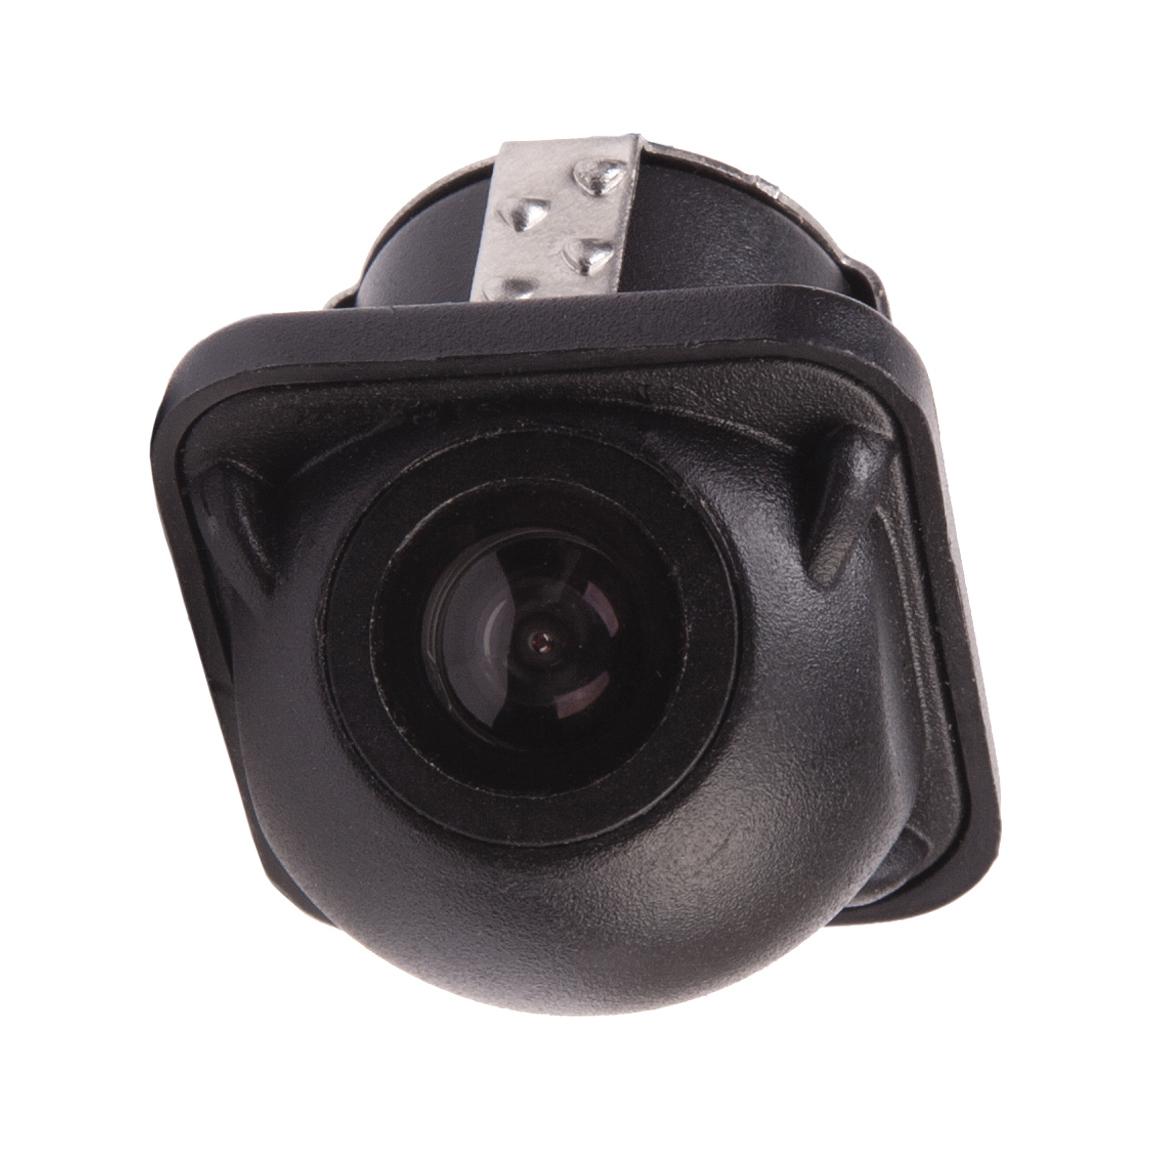 Камера заднего вида Prology RVC-110 95760 2p600 957602p600 камера заднего вида для kia sorento 2014 2015 камера заднего вида для помощи при парковке резервная камера